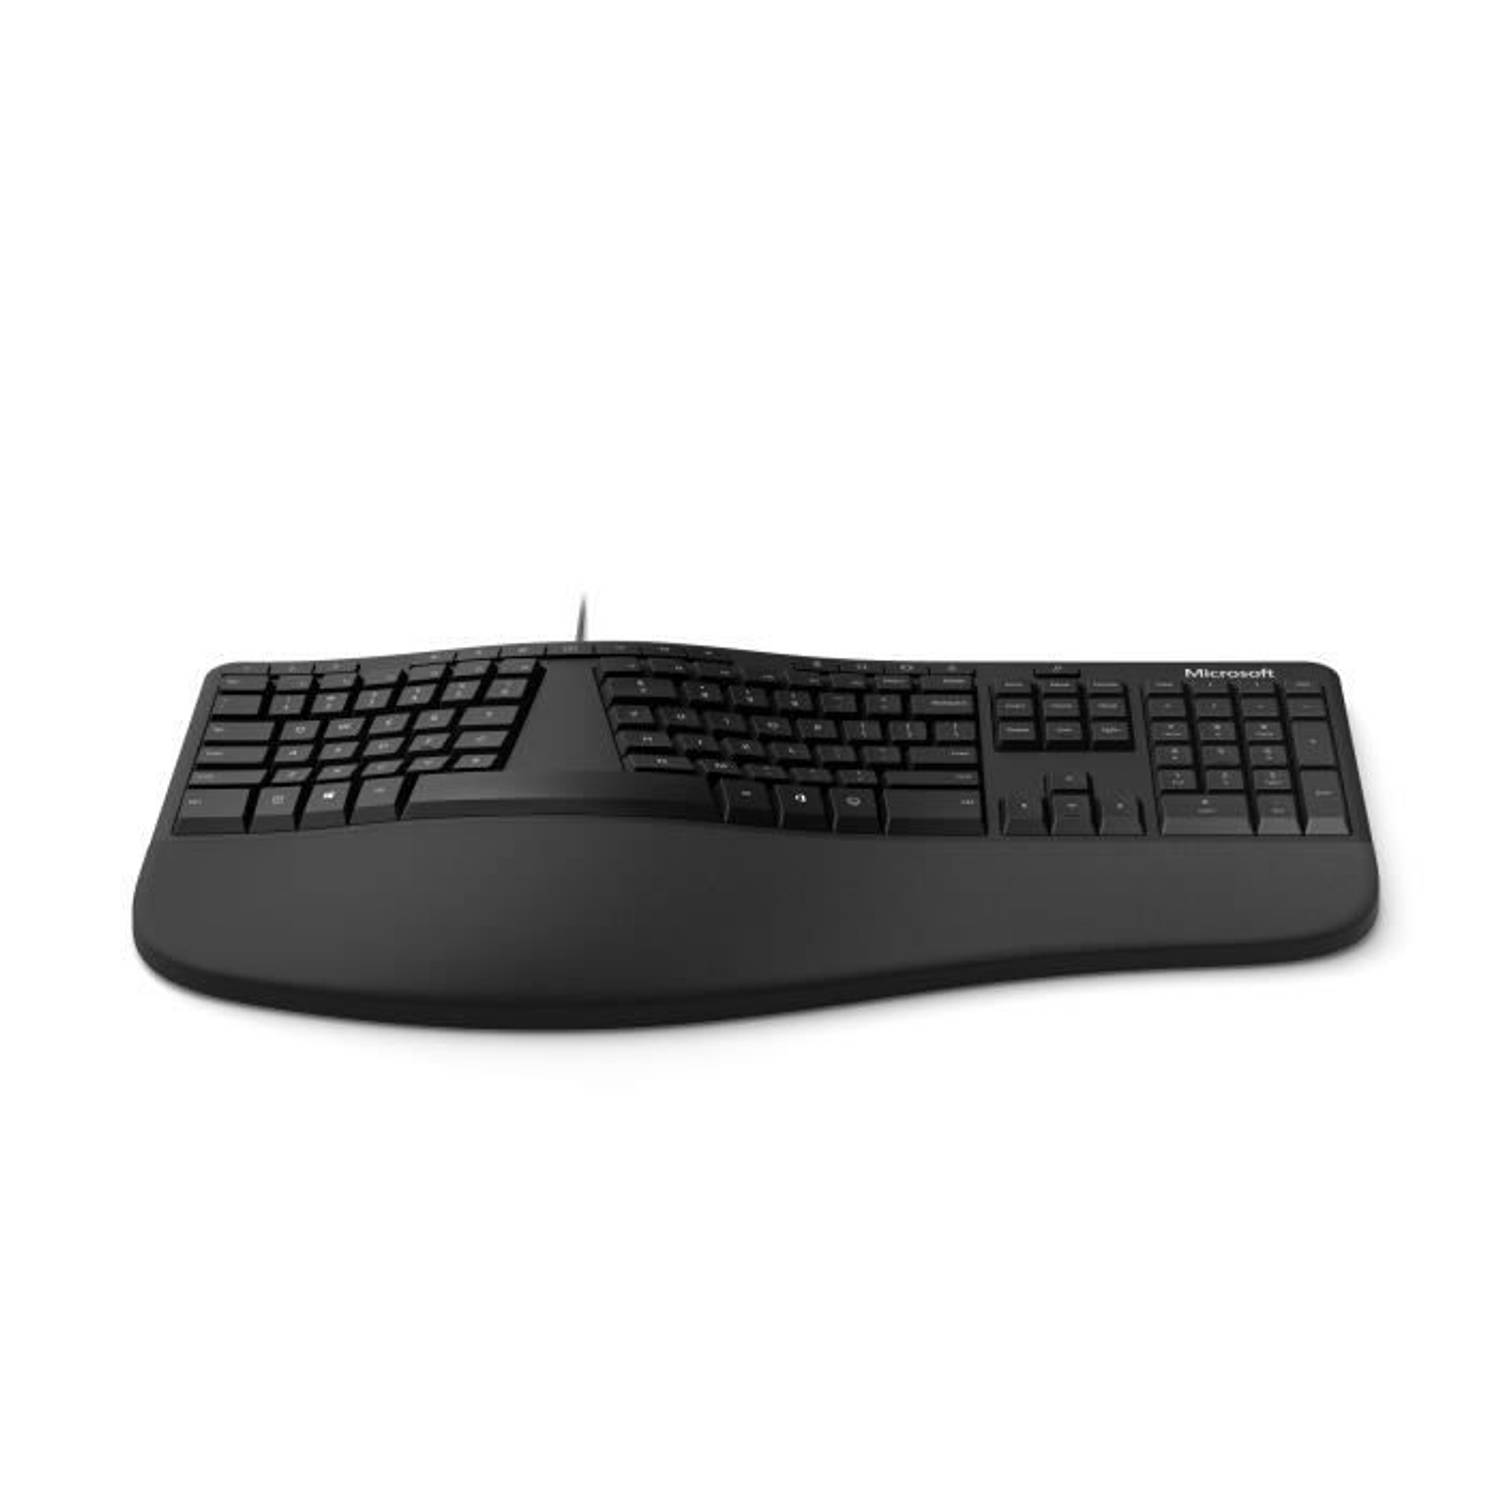 geluid lade droog Microsoft Ergonomisch toetsenbord - zwart | Blokker